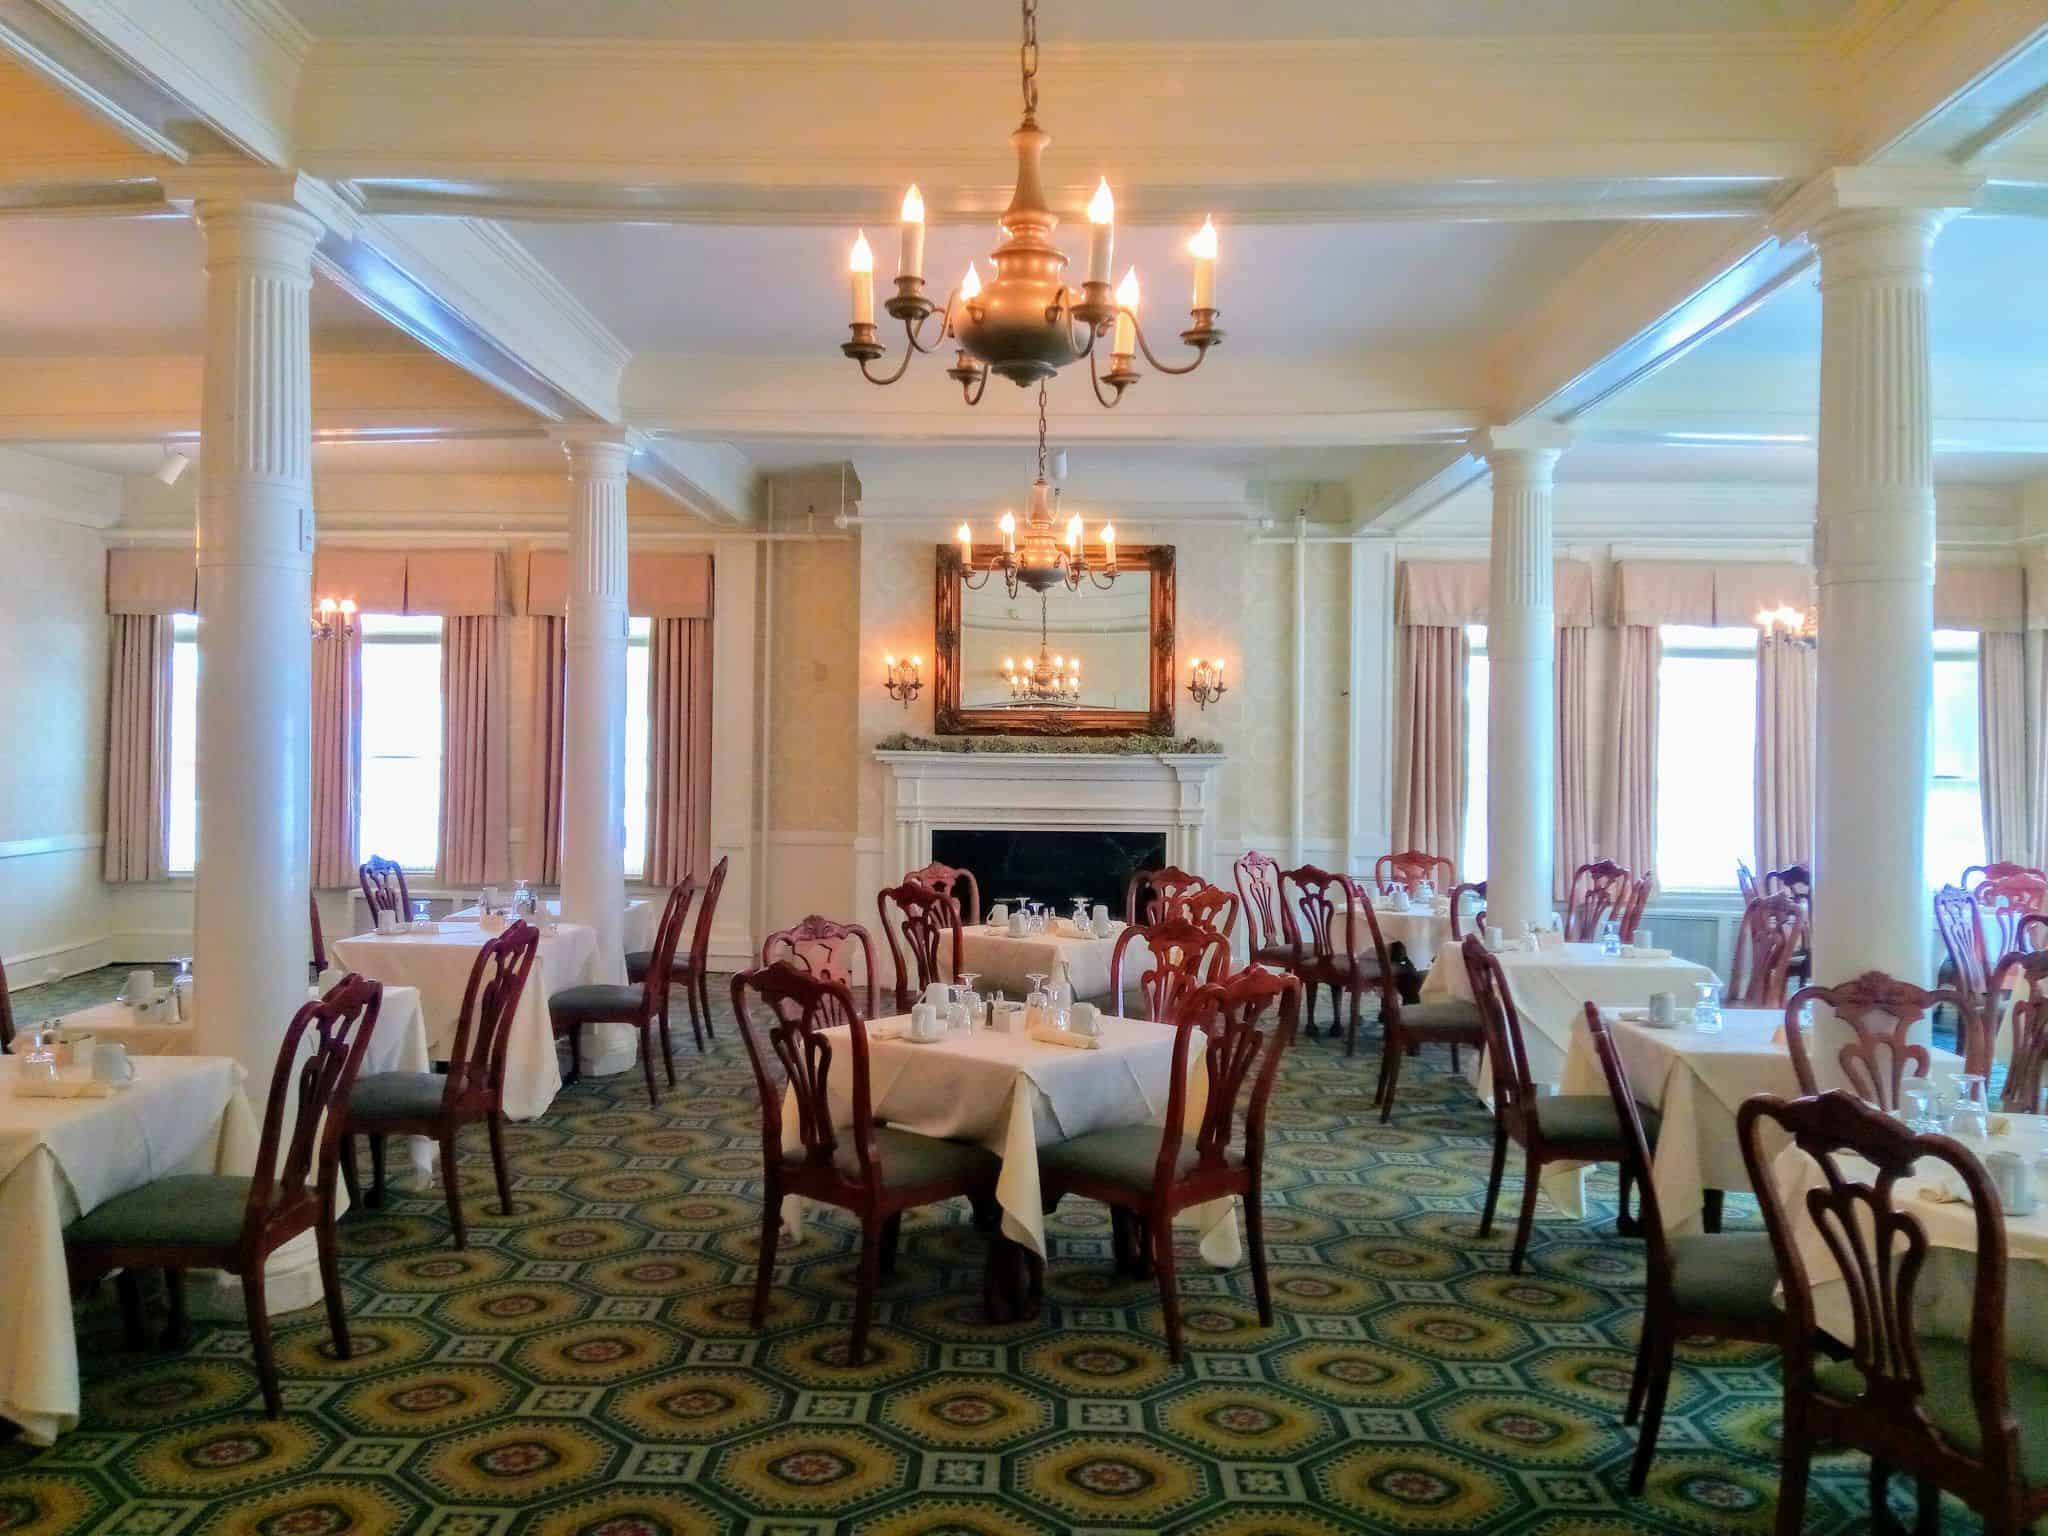 Middlebury Inn - Restaurant Dining Room